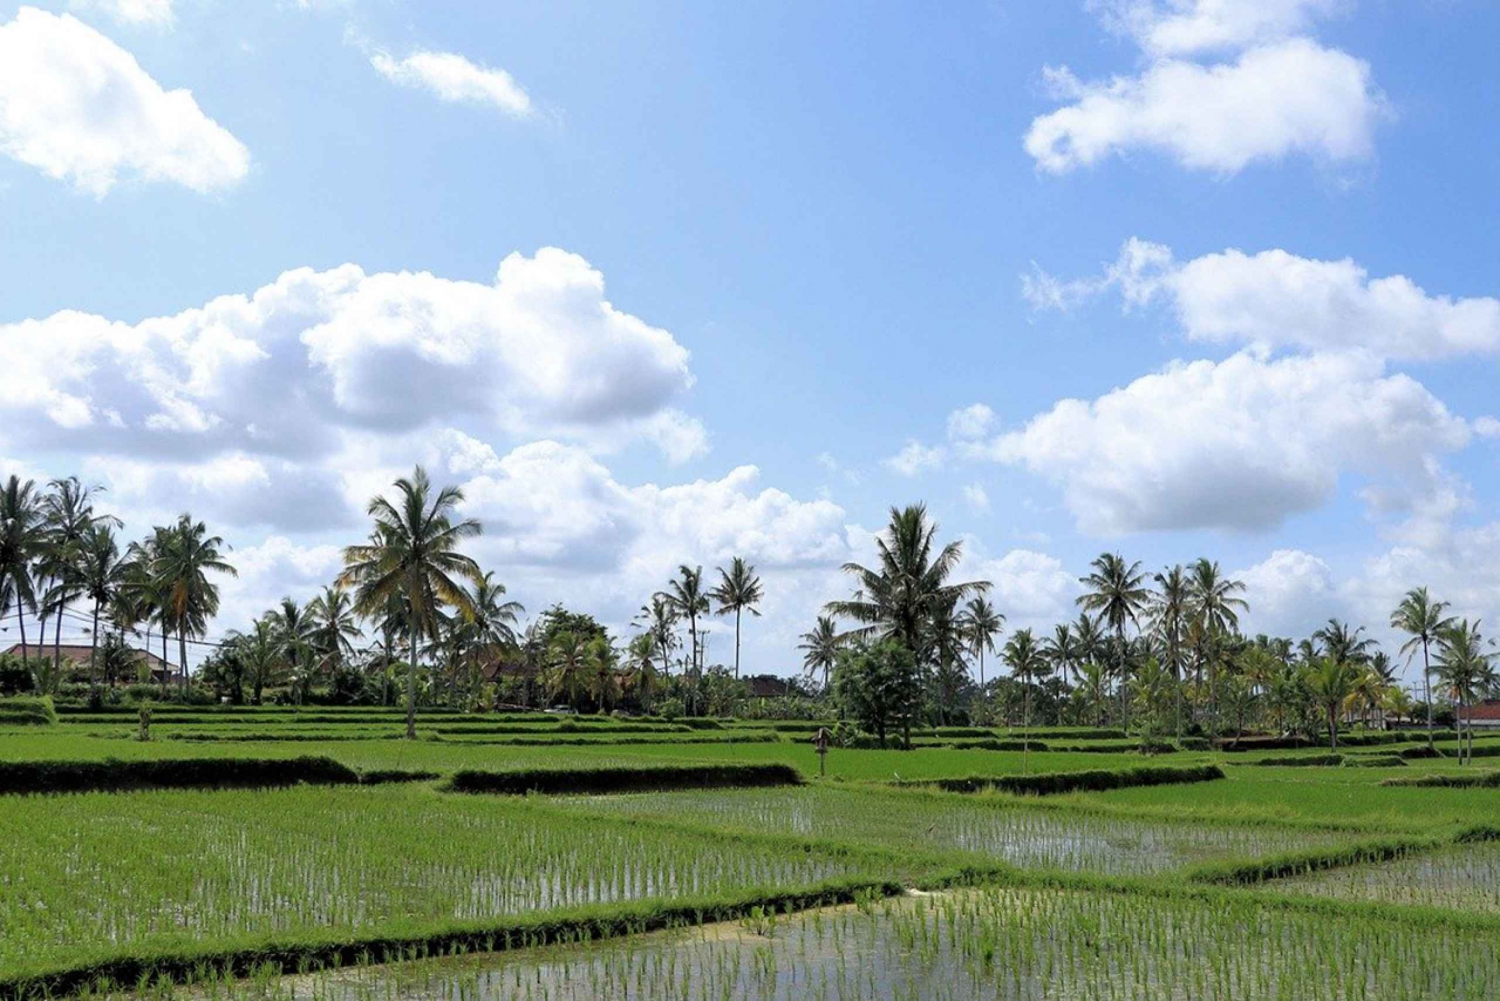 Bali : Taman ayun, Tanah Lot,Rice Terrace etc. /Private tour